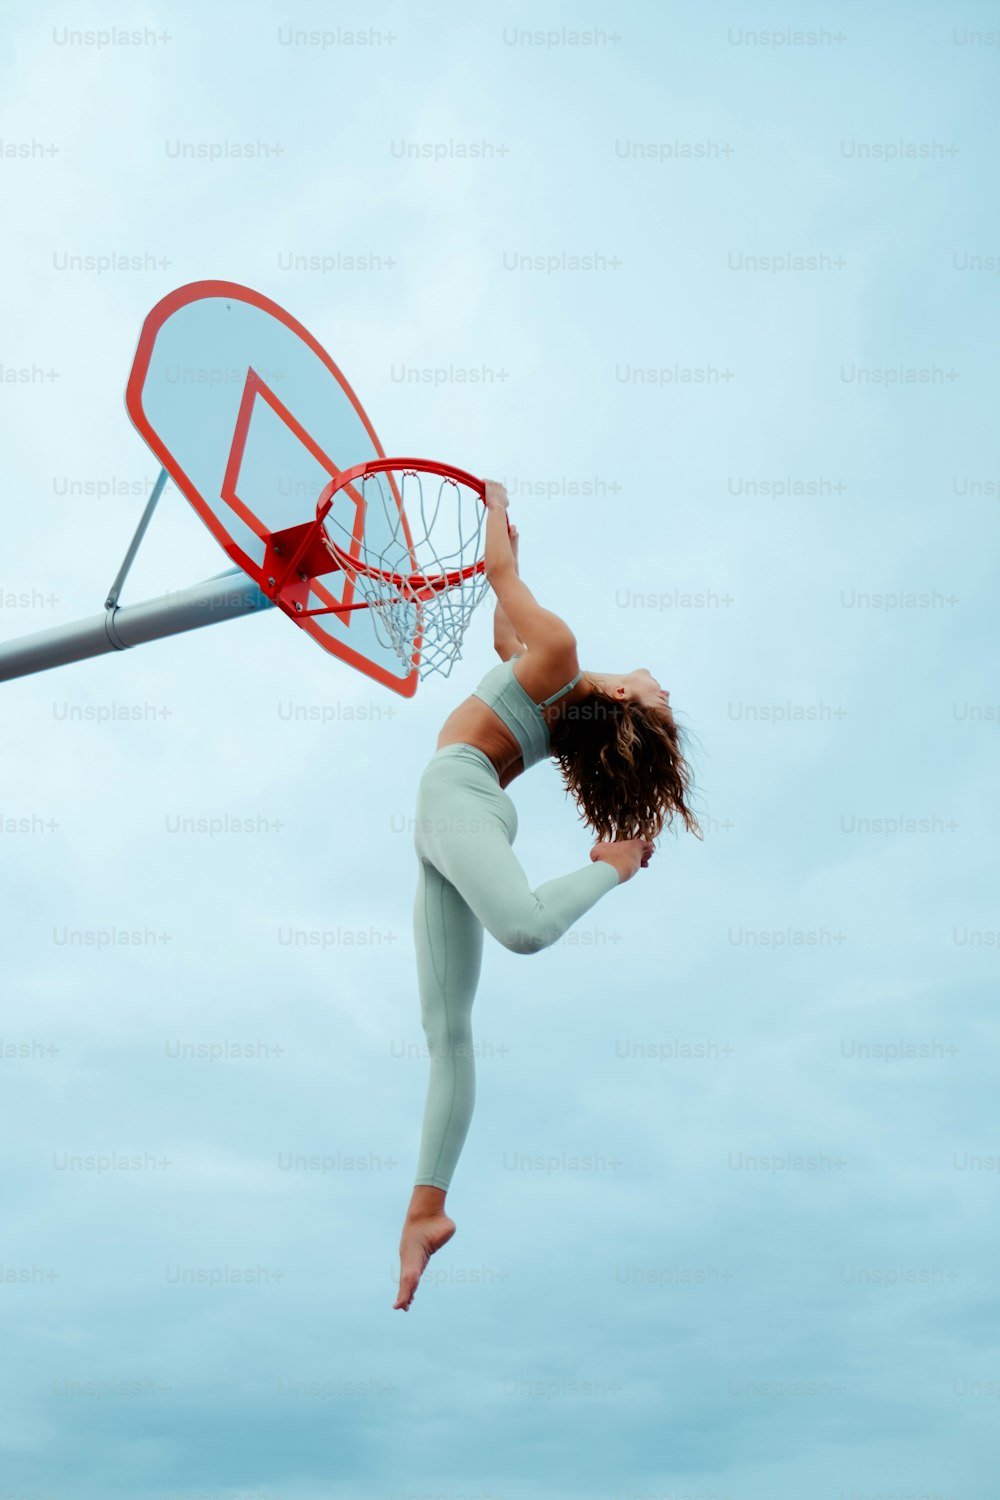 Une femme saute en l’air pour dunker un ballon de basket